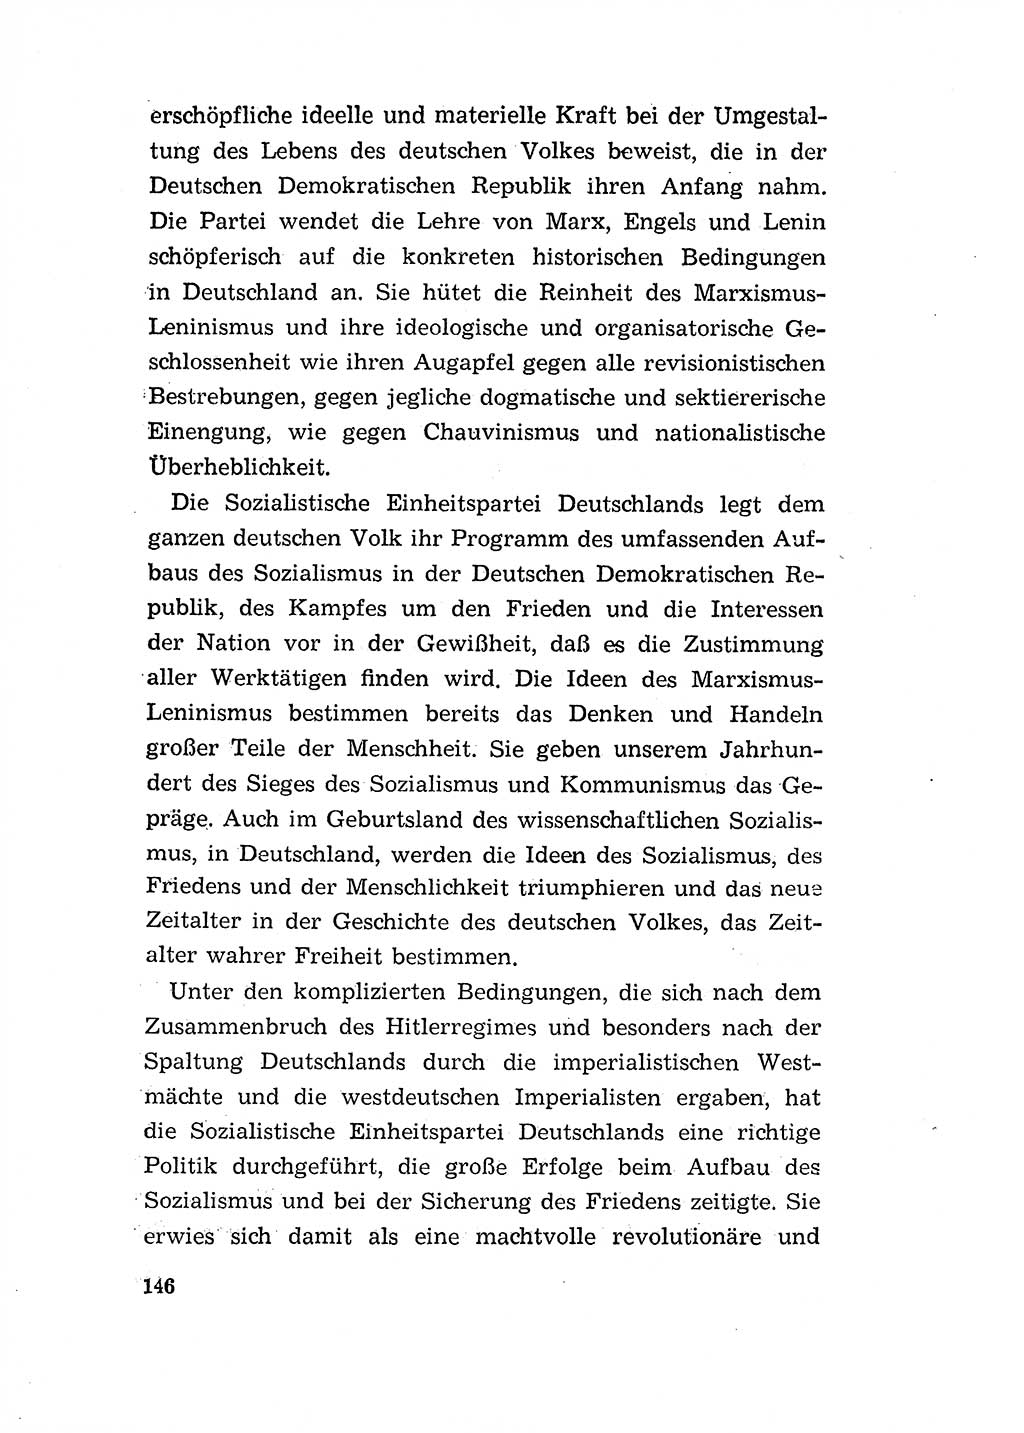 Programm der Sozialistischen Einheitspartei Deutschlands (SED) [Deutsche Demokratische Republik (DDR)] 1963, Seite 146 (Progr. SED DDR 1963, S. 146)